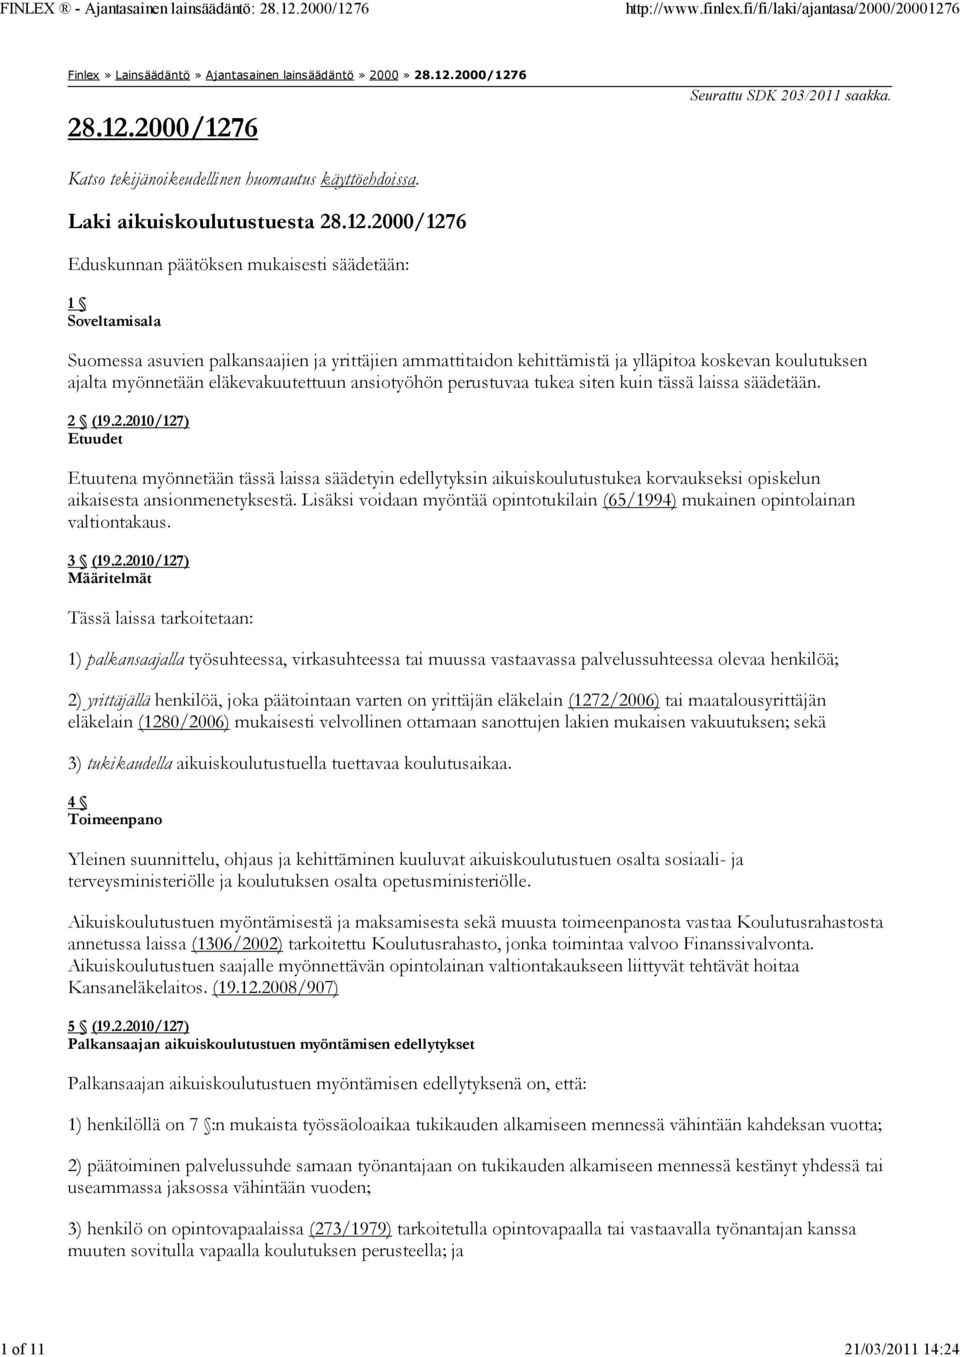 2000/1276 Eduskunnan päätöksen mukaisesti säädetään: 1 Soveltamisala Suomessa asuvien palkansaajien ja yrittäjien ammattitaidon kehittämistä ja ylläpitoa koskevan koulutuksen ajalta myönnetään